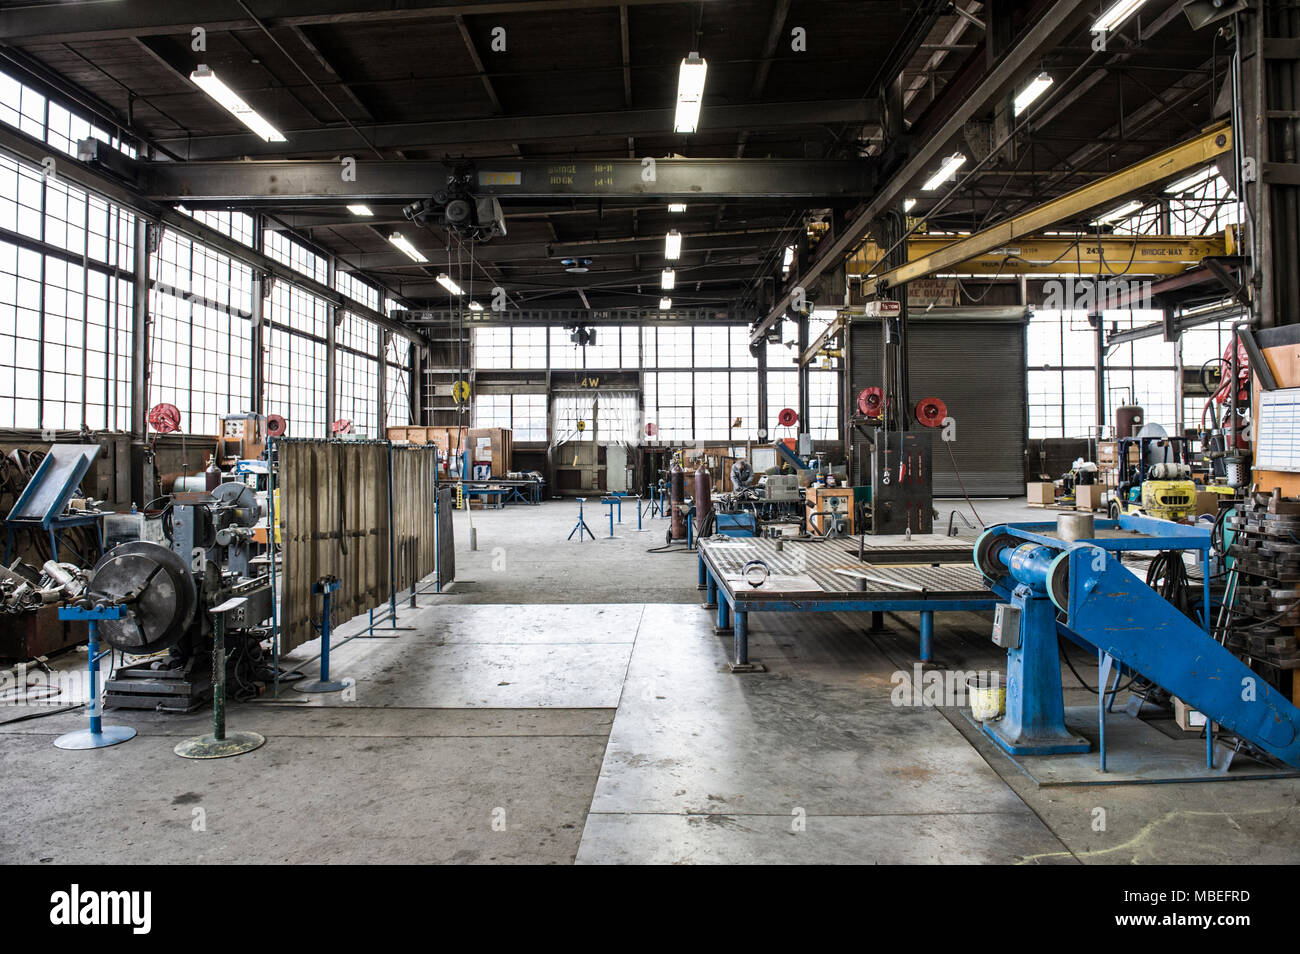 Il pavimento di una fabbrica con macchinari industriali e spazio aperto, presse di metallo e il tettuccio di un ingranaggio di sollevamento e portali. La produzione. Foto Stock